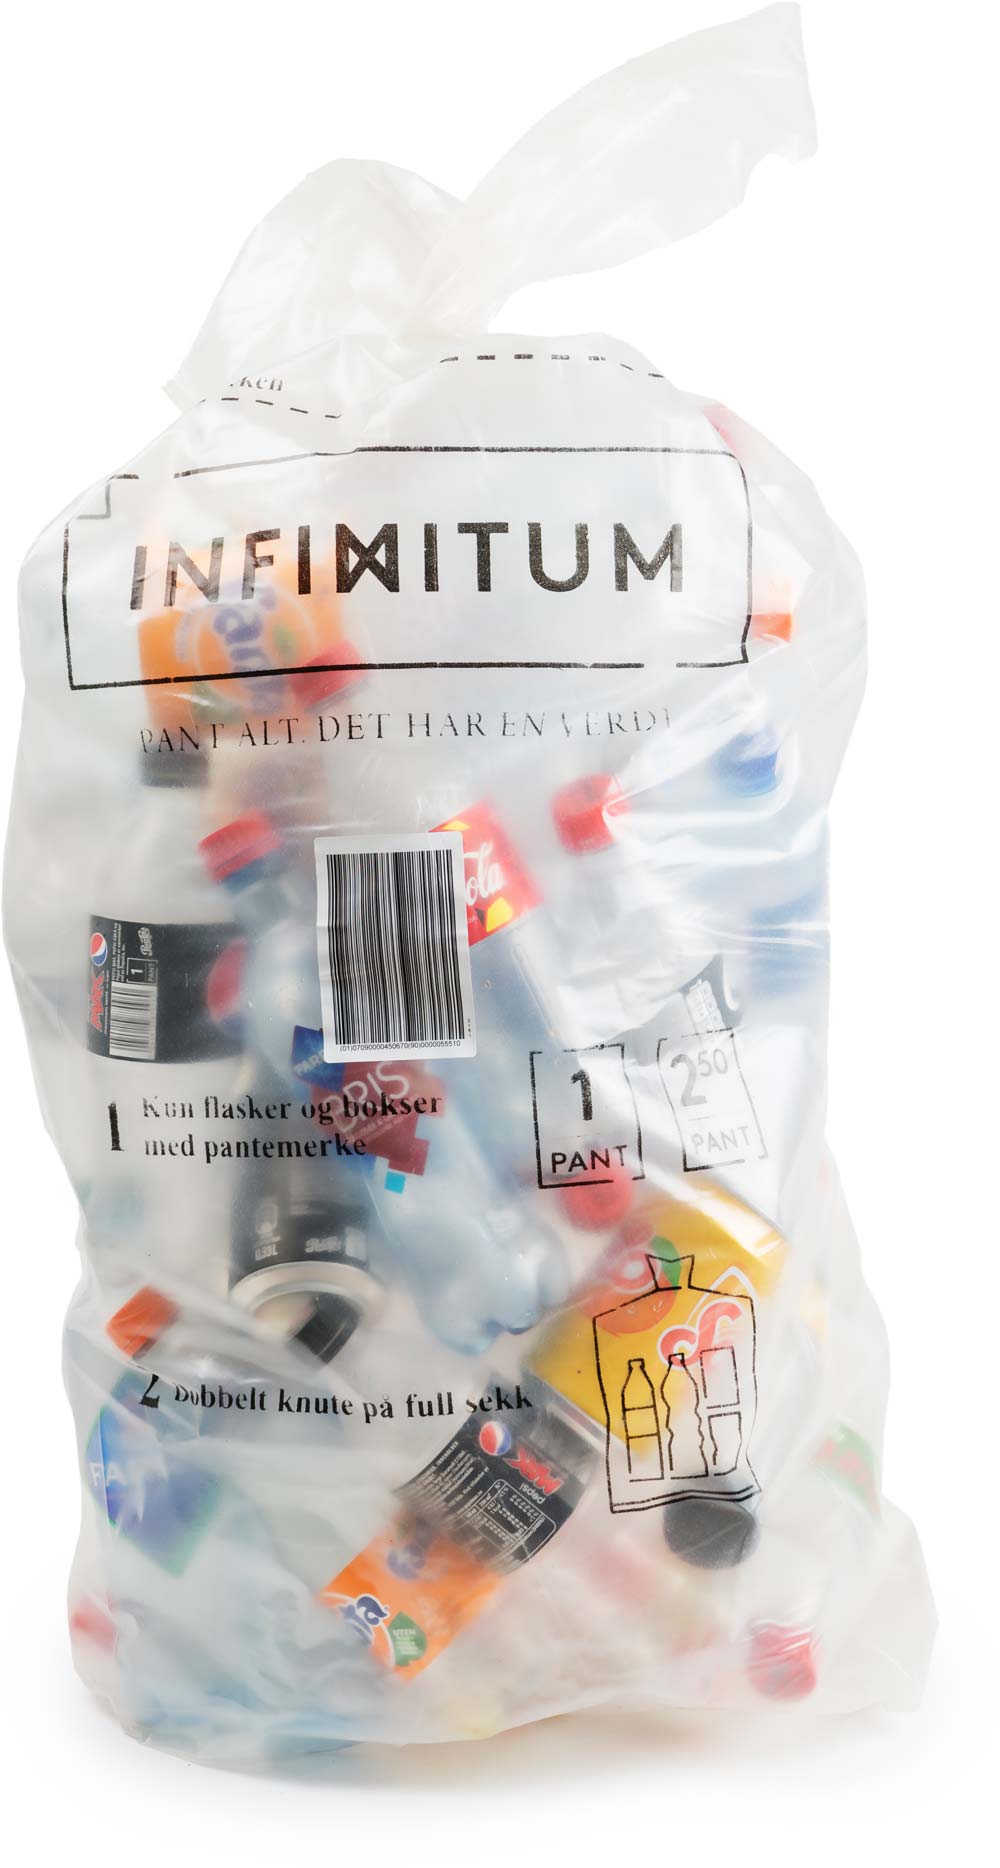 Infinitum-pose full av tomflasker. Foto: Jonas Gran